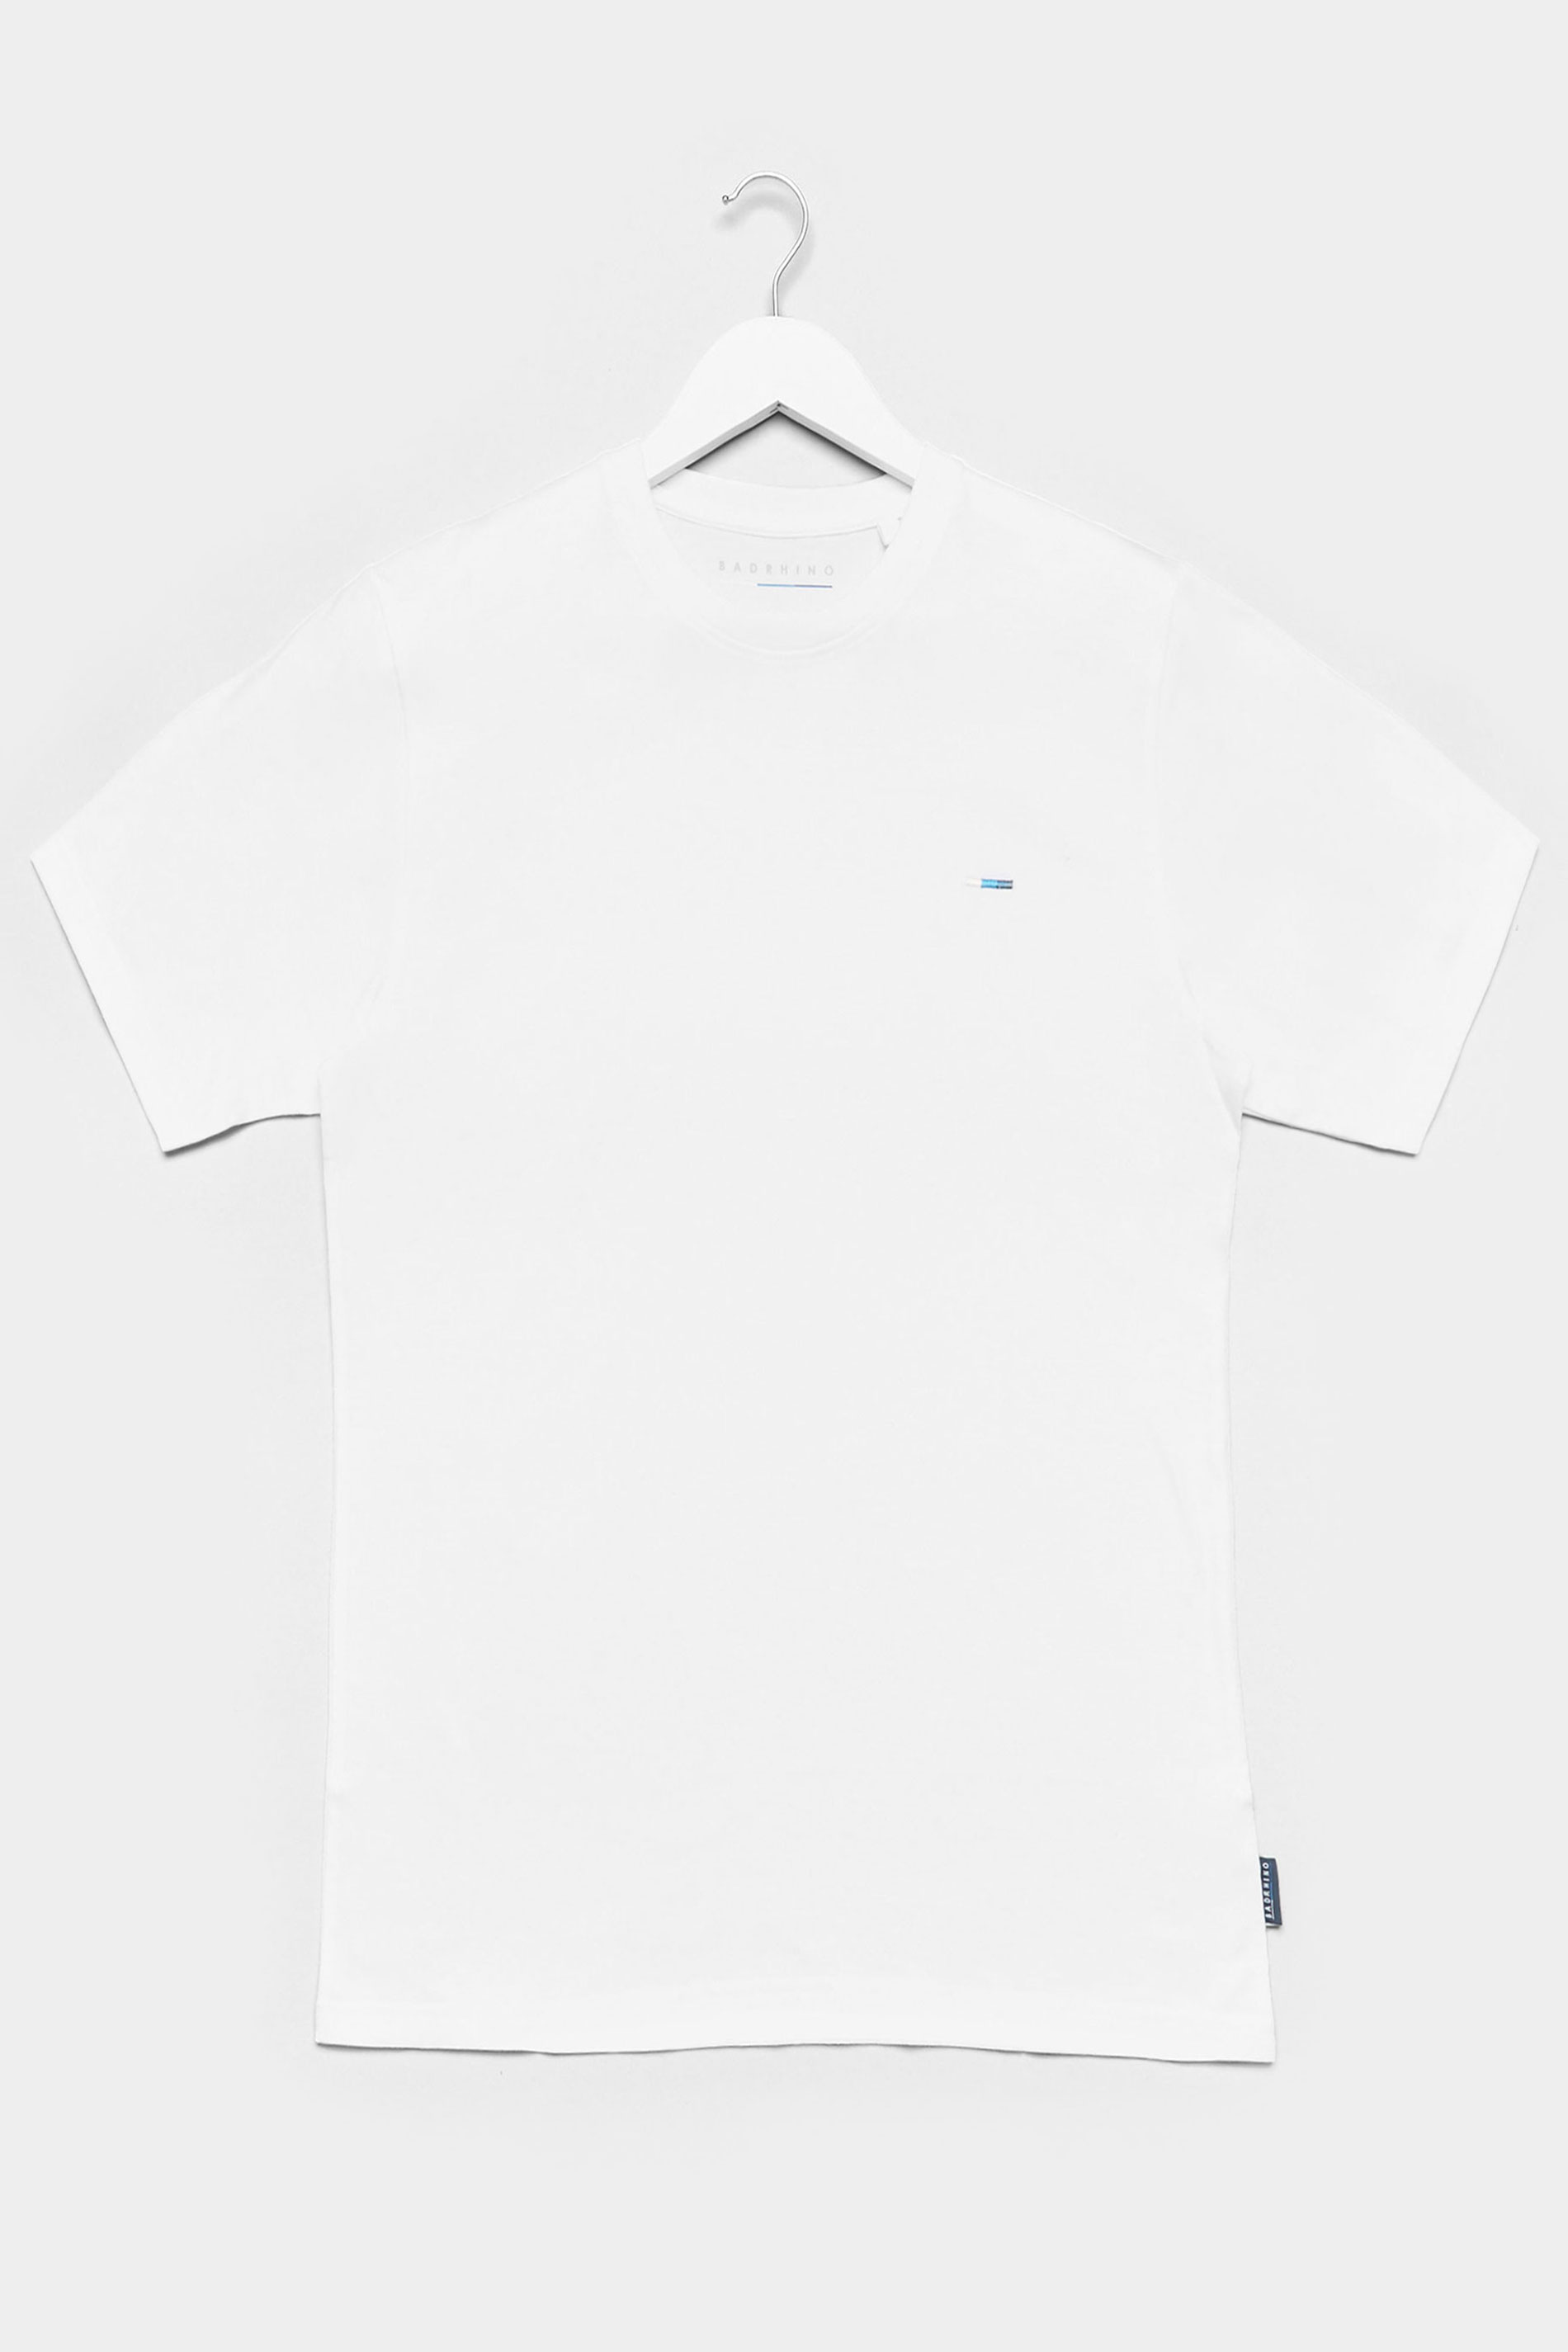 BadRhino White Recycled Plain T-Shirt_F.jpg